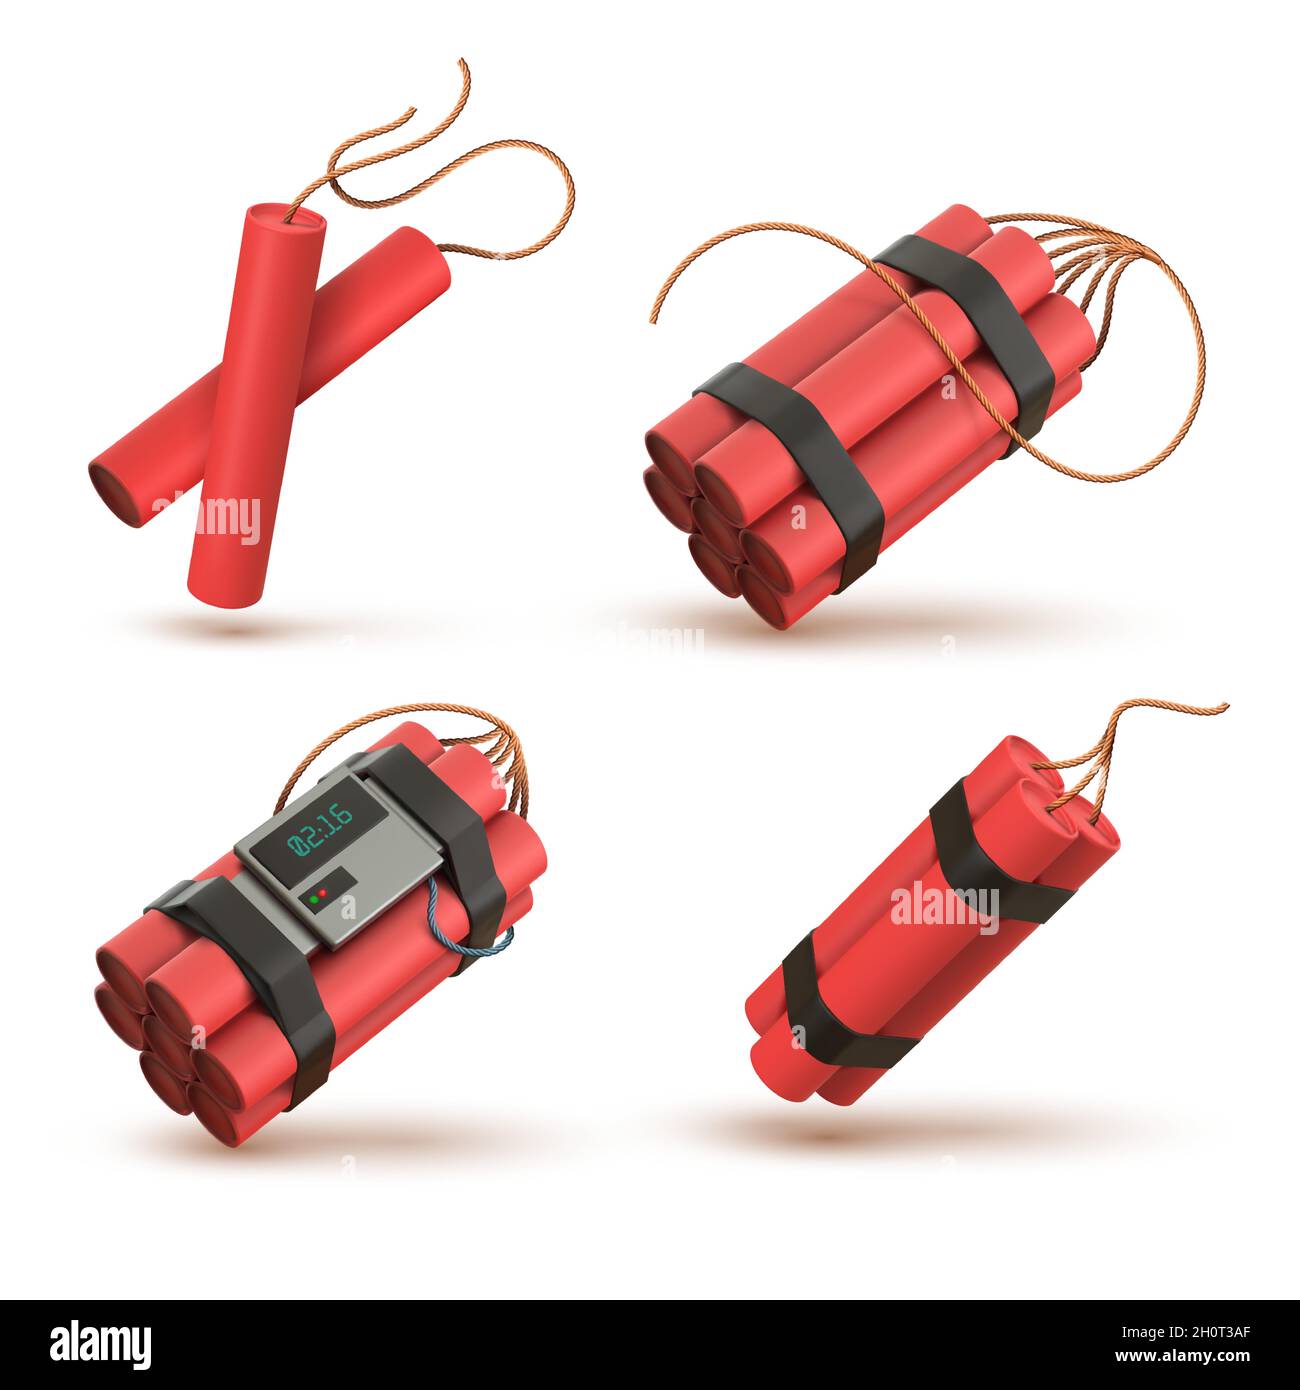 Realistische rote 3d-Dynamitbombe mit elektronischer Zeitschaltuhr-Detonator. TNT-Sticks mit Docht. Explosive Waffe, pyrotechnische, Feuerwerkskörper Vektor-Set Stock Vektor